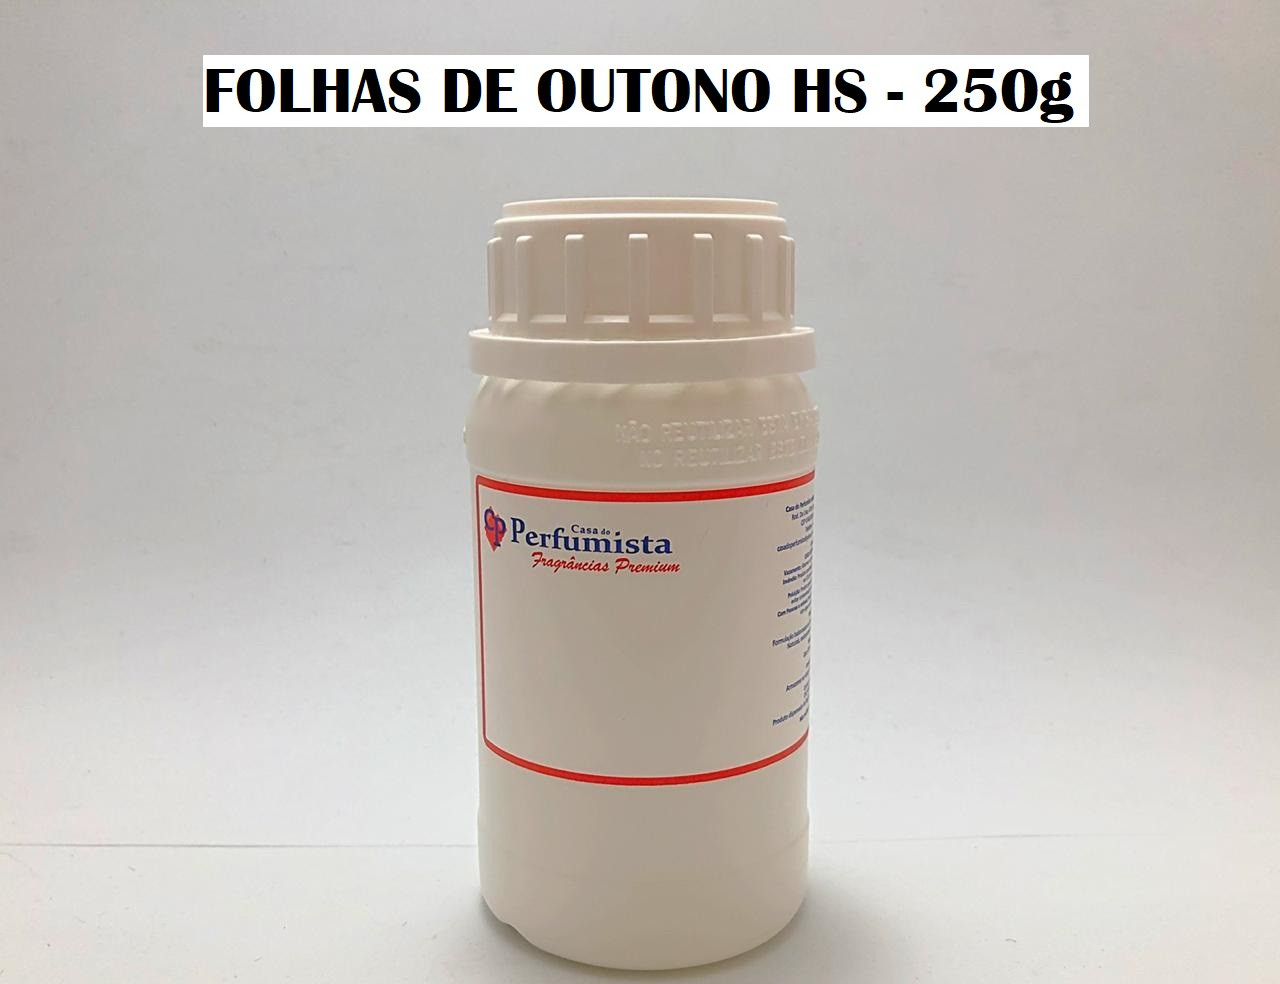 FOLHAS DE OUTONO HS - 250g